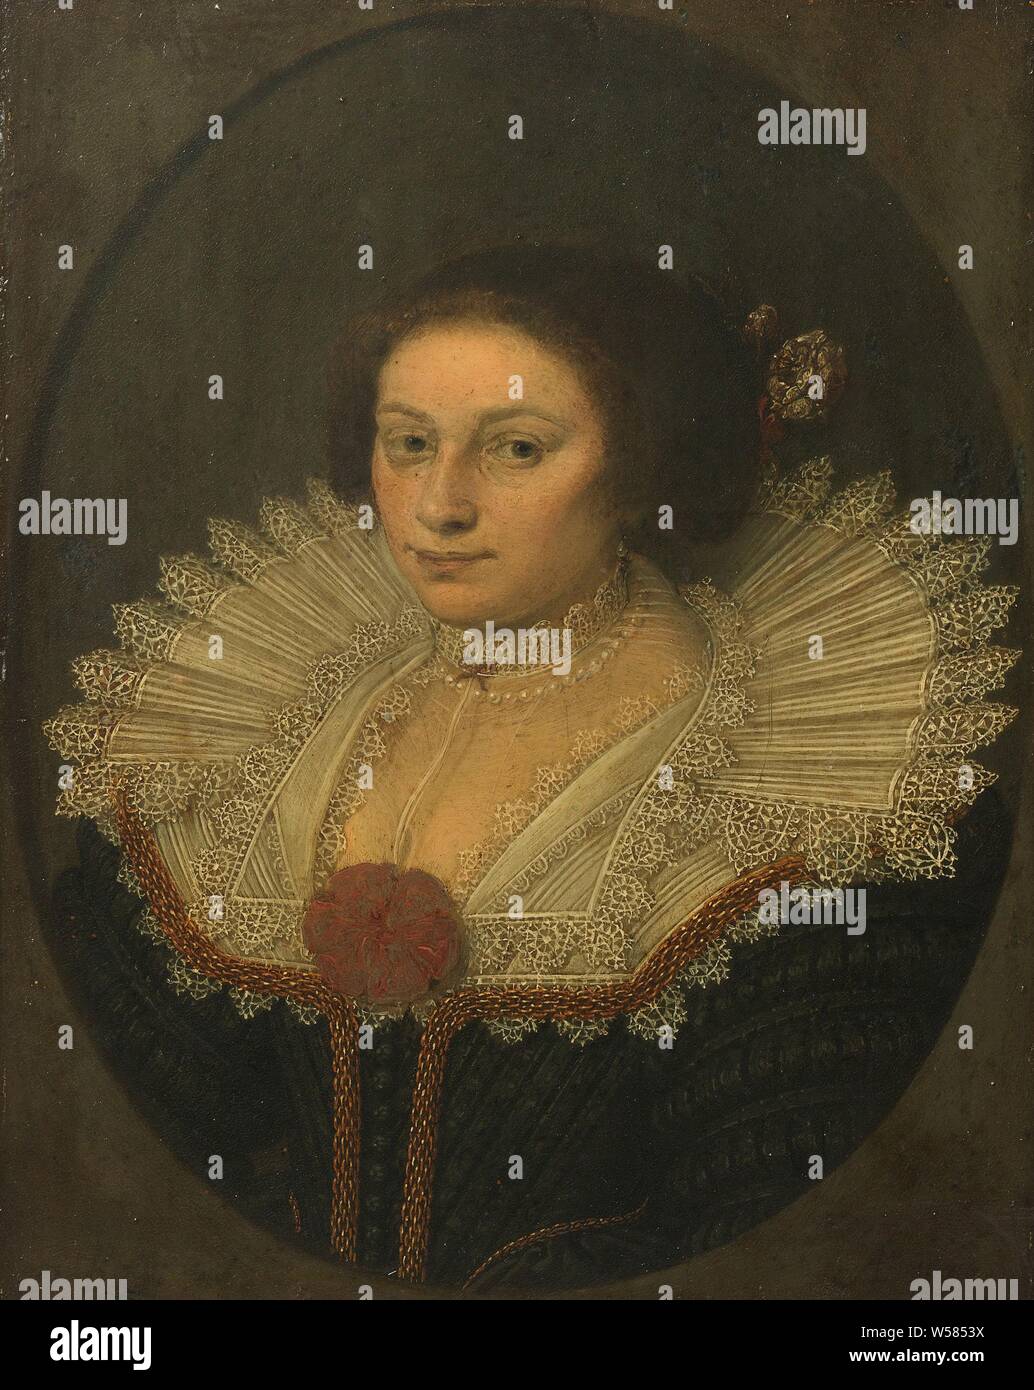 Portrait d'Aertje Witsen (1599-1652), Portrait d'Aertje Witsen, épouse de Cornelis Bicker. Buste avec un grand col en dentelle., David Bailly, 1626, cuivre (métal), de la peinture à l'huile (peinture), support : h 18,5 cm × w 14,8 cm d 4,3 cm Banque D'Images